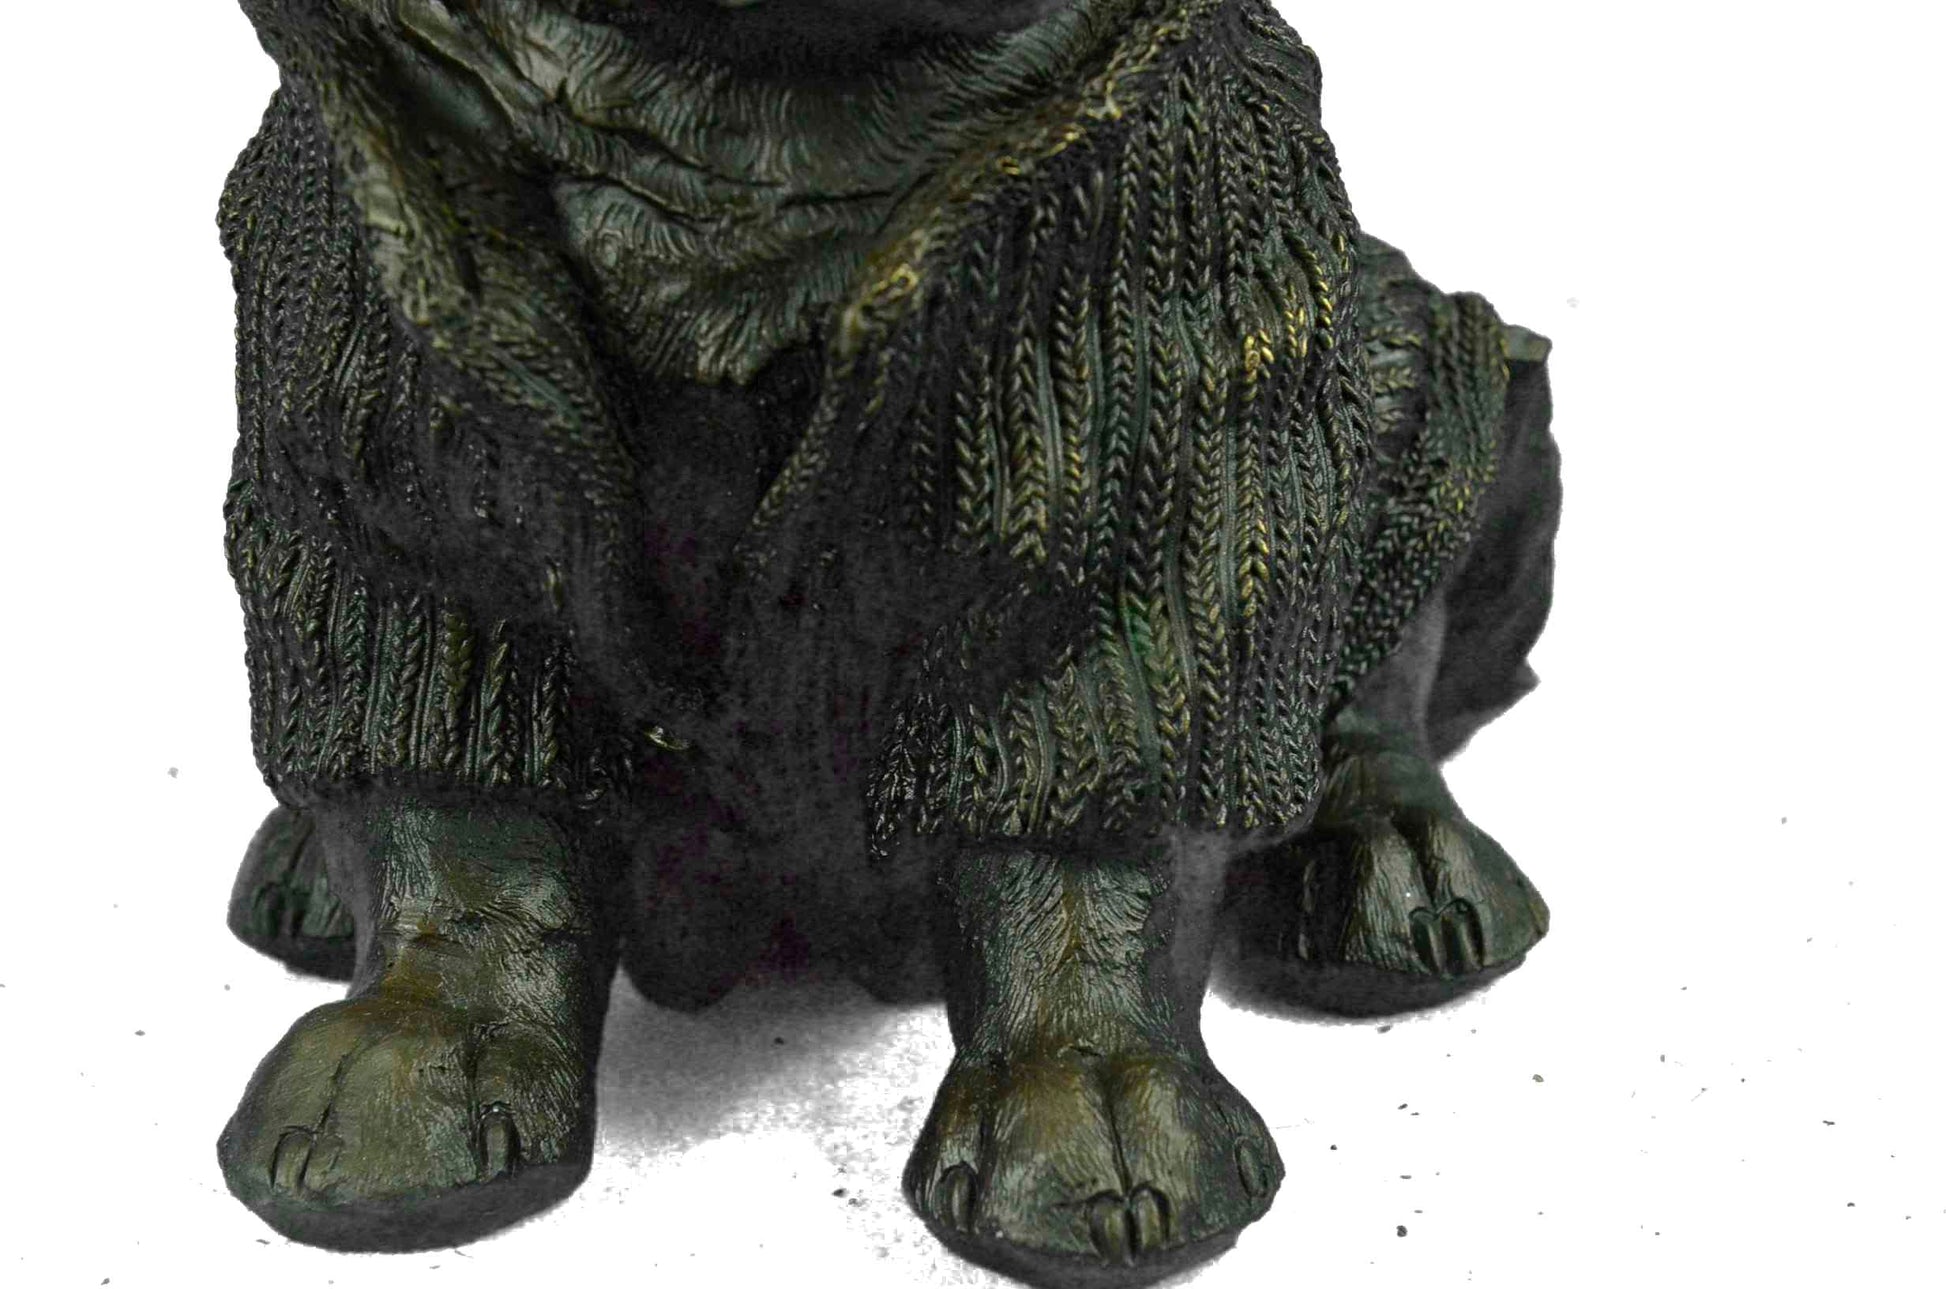 Cute Chihuahua Dog in Hooded Sweater Bronze Sculpture Figurine Statue Hot Cast